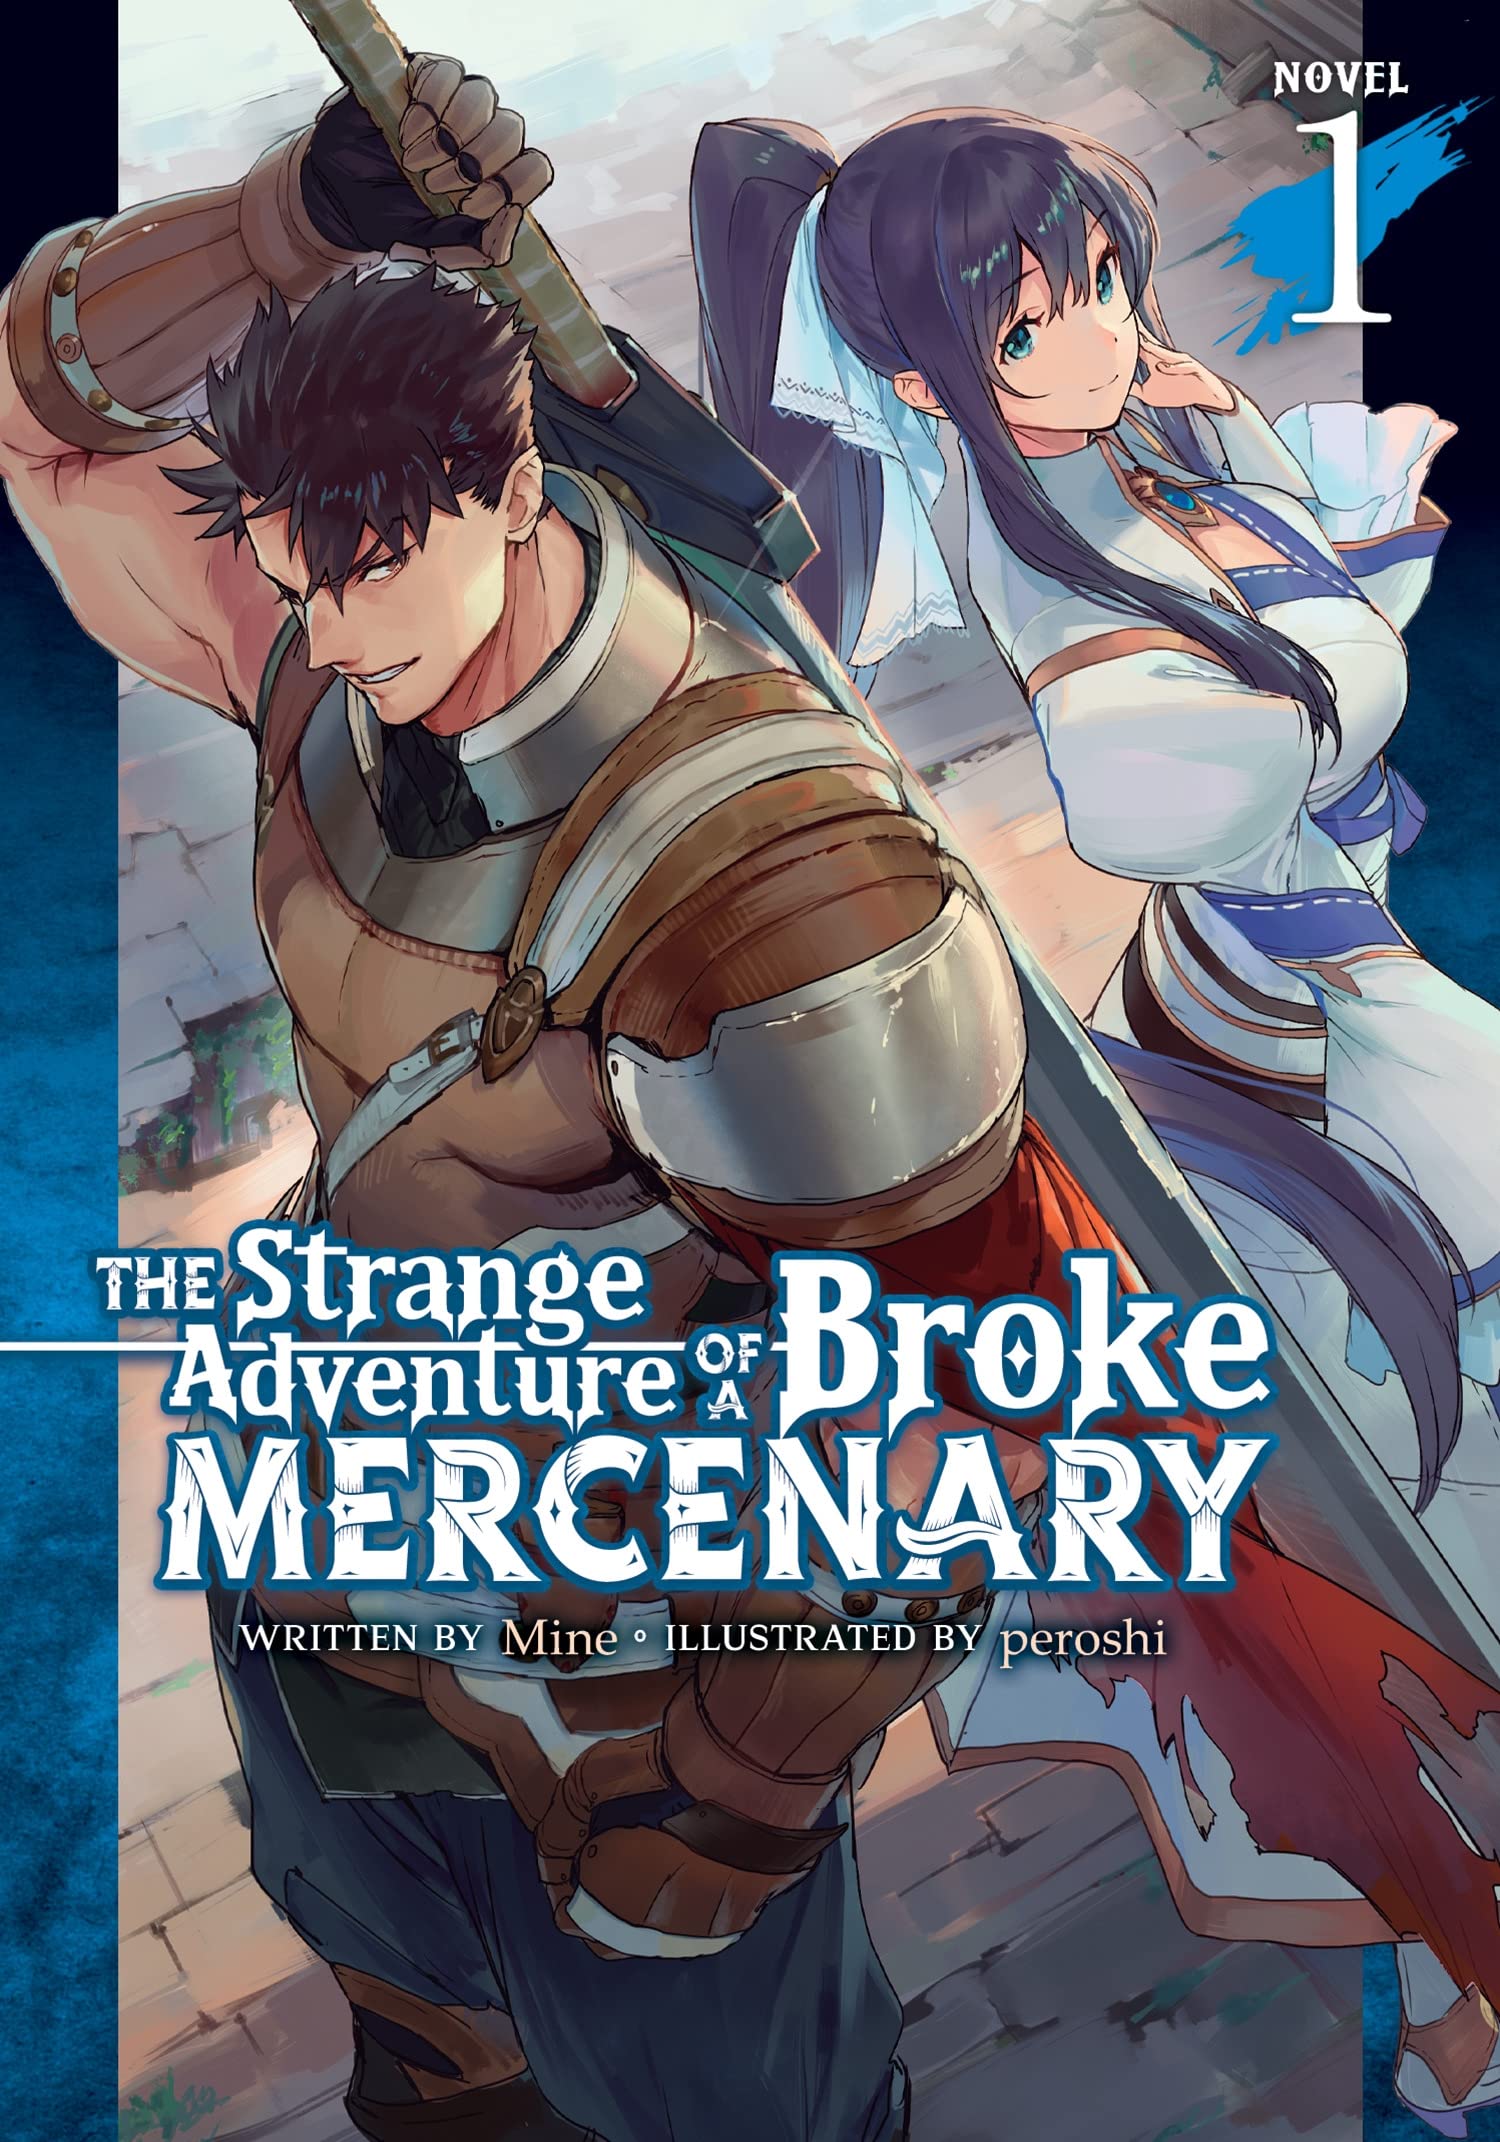 The Strange Adventure of a Broke Mercenary (Light Novel) Vol. 01